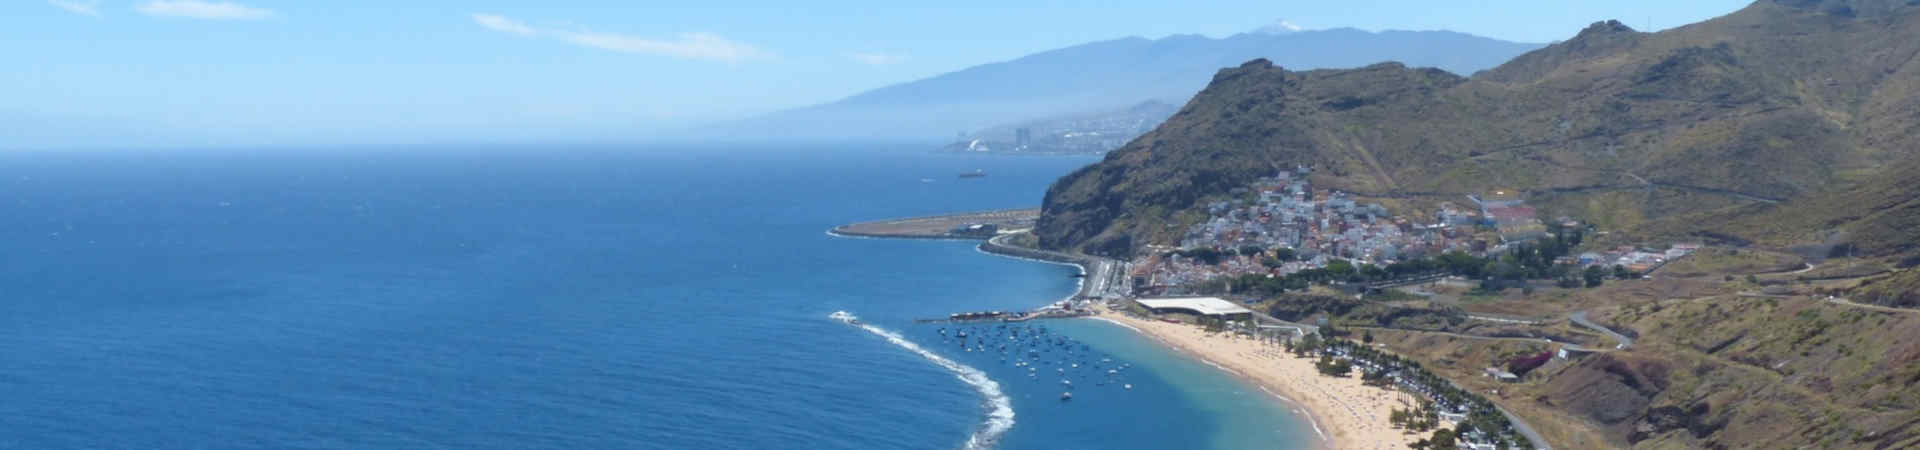 Immagine del porto di arrivo Tenerife (Santa Cruz) per la rotta traghetto Cadice - Tenerife (Santa Cruz)